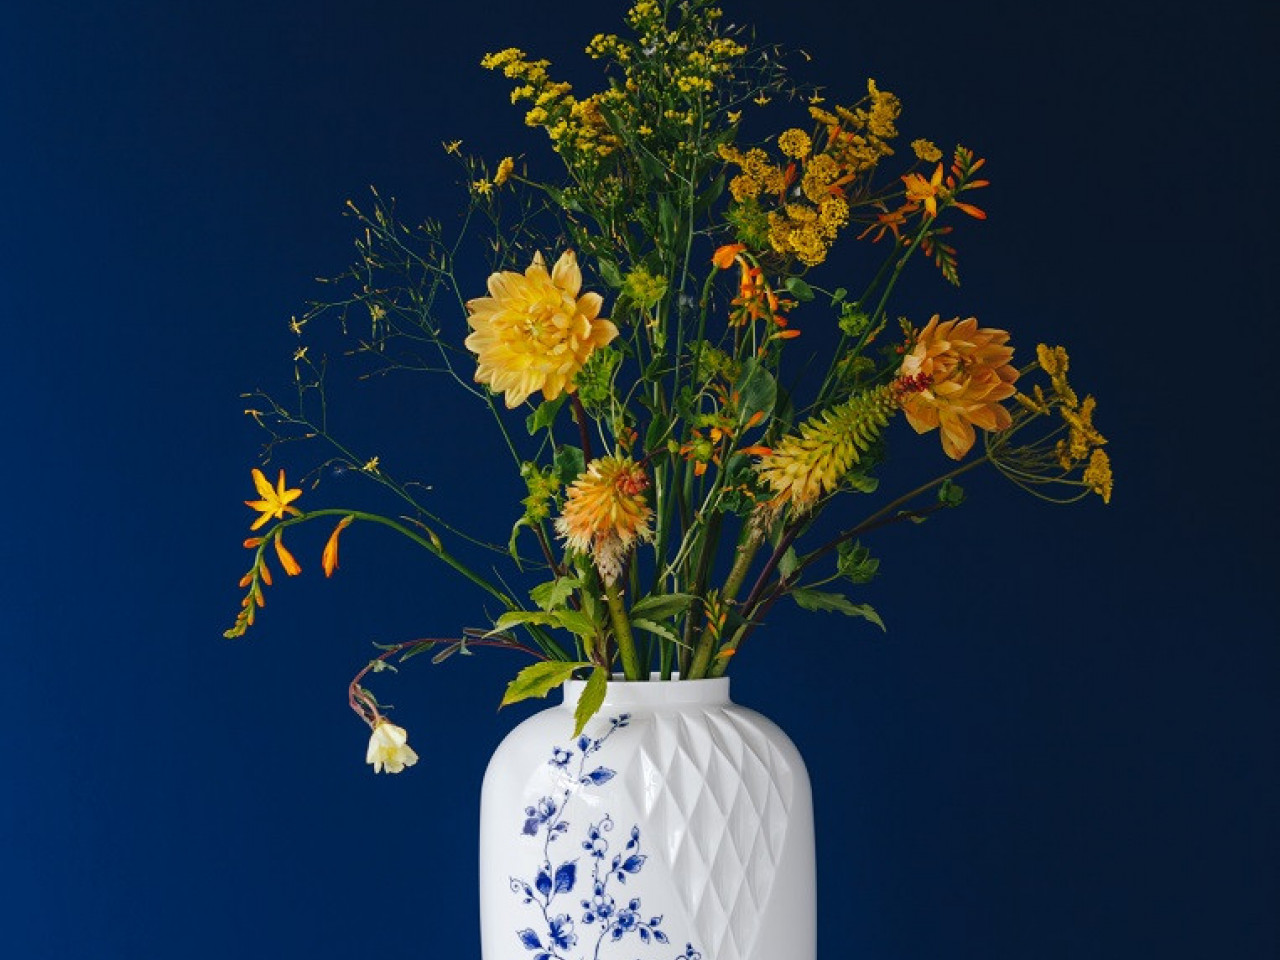 Blauw Vouw Vaas XL met verse bloemen ontworpen door Romy Kuhne Heinen Delfts Blauw